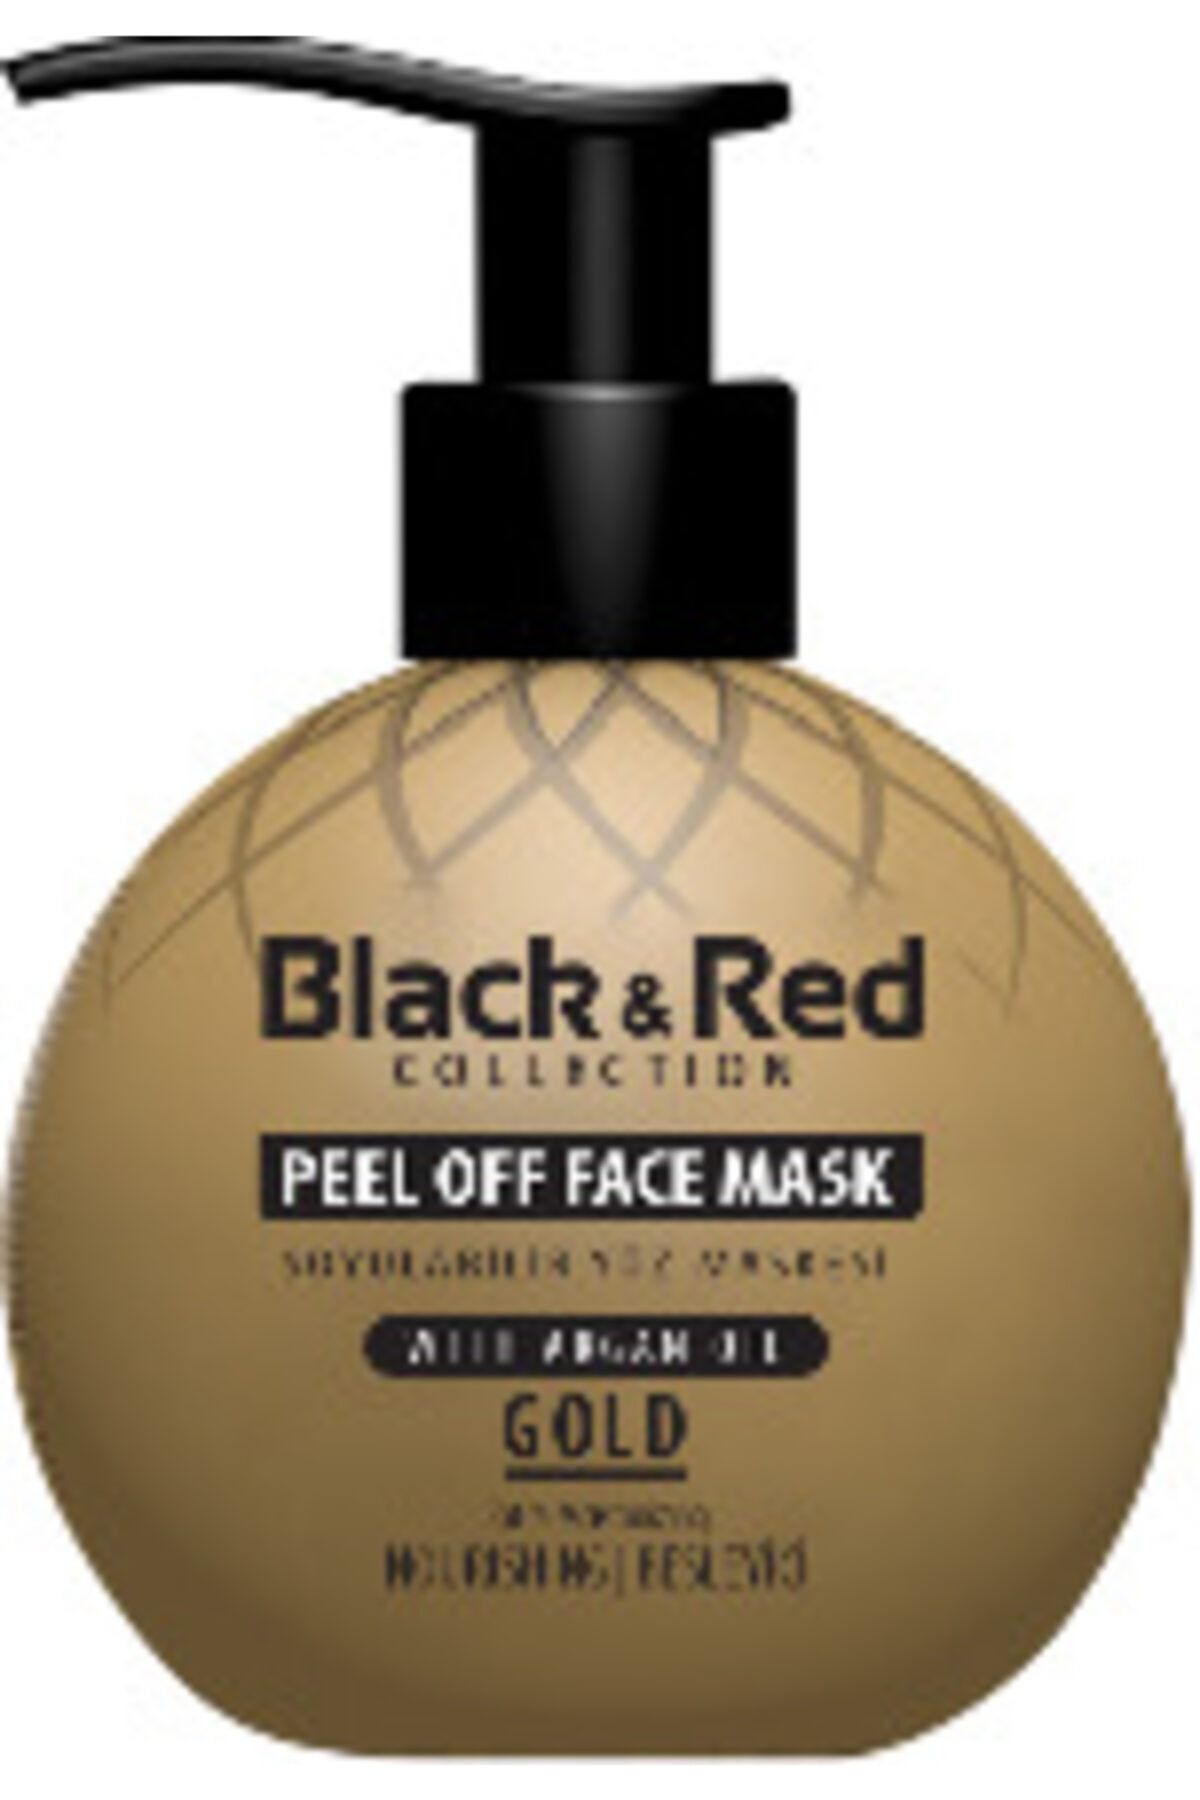 Black Red Siyah Noktalara Karşı Soyulabilir Gold Yüz Maskesi 250 ml